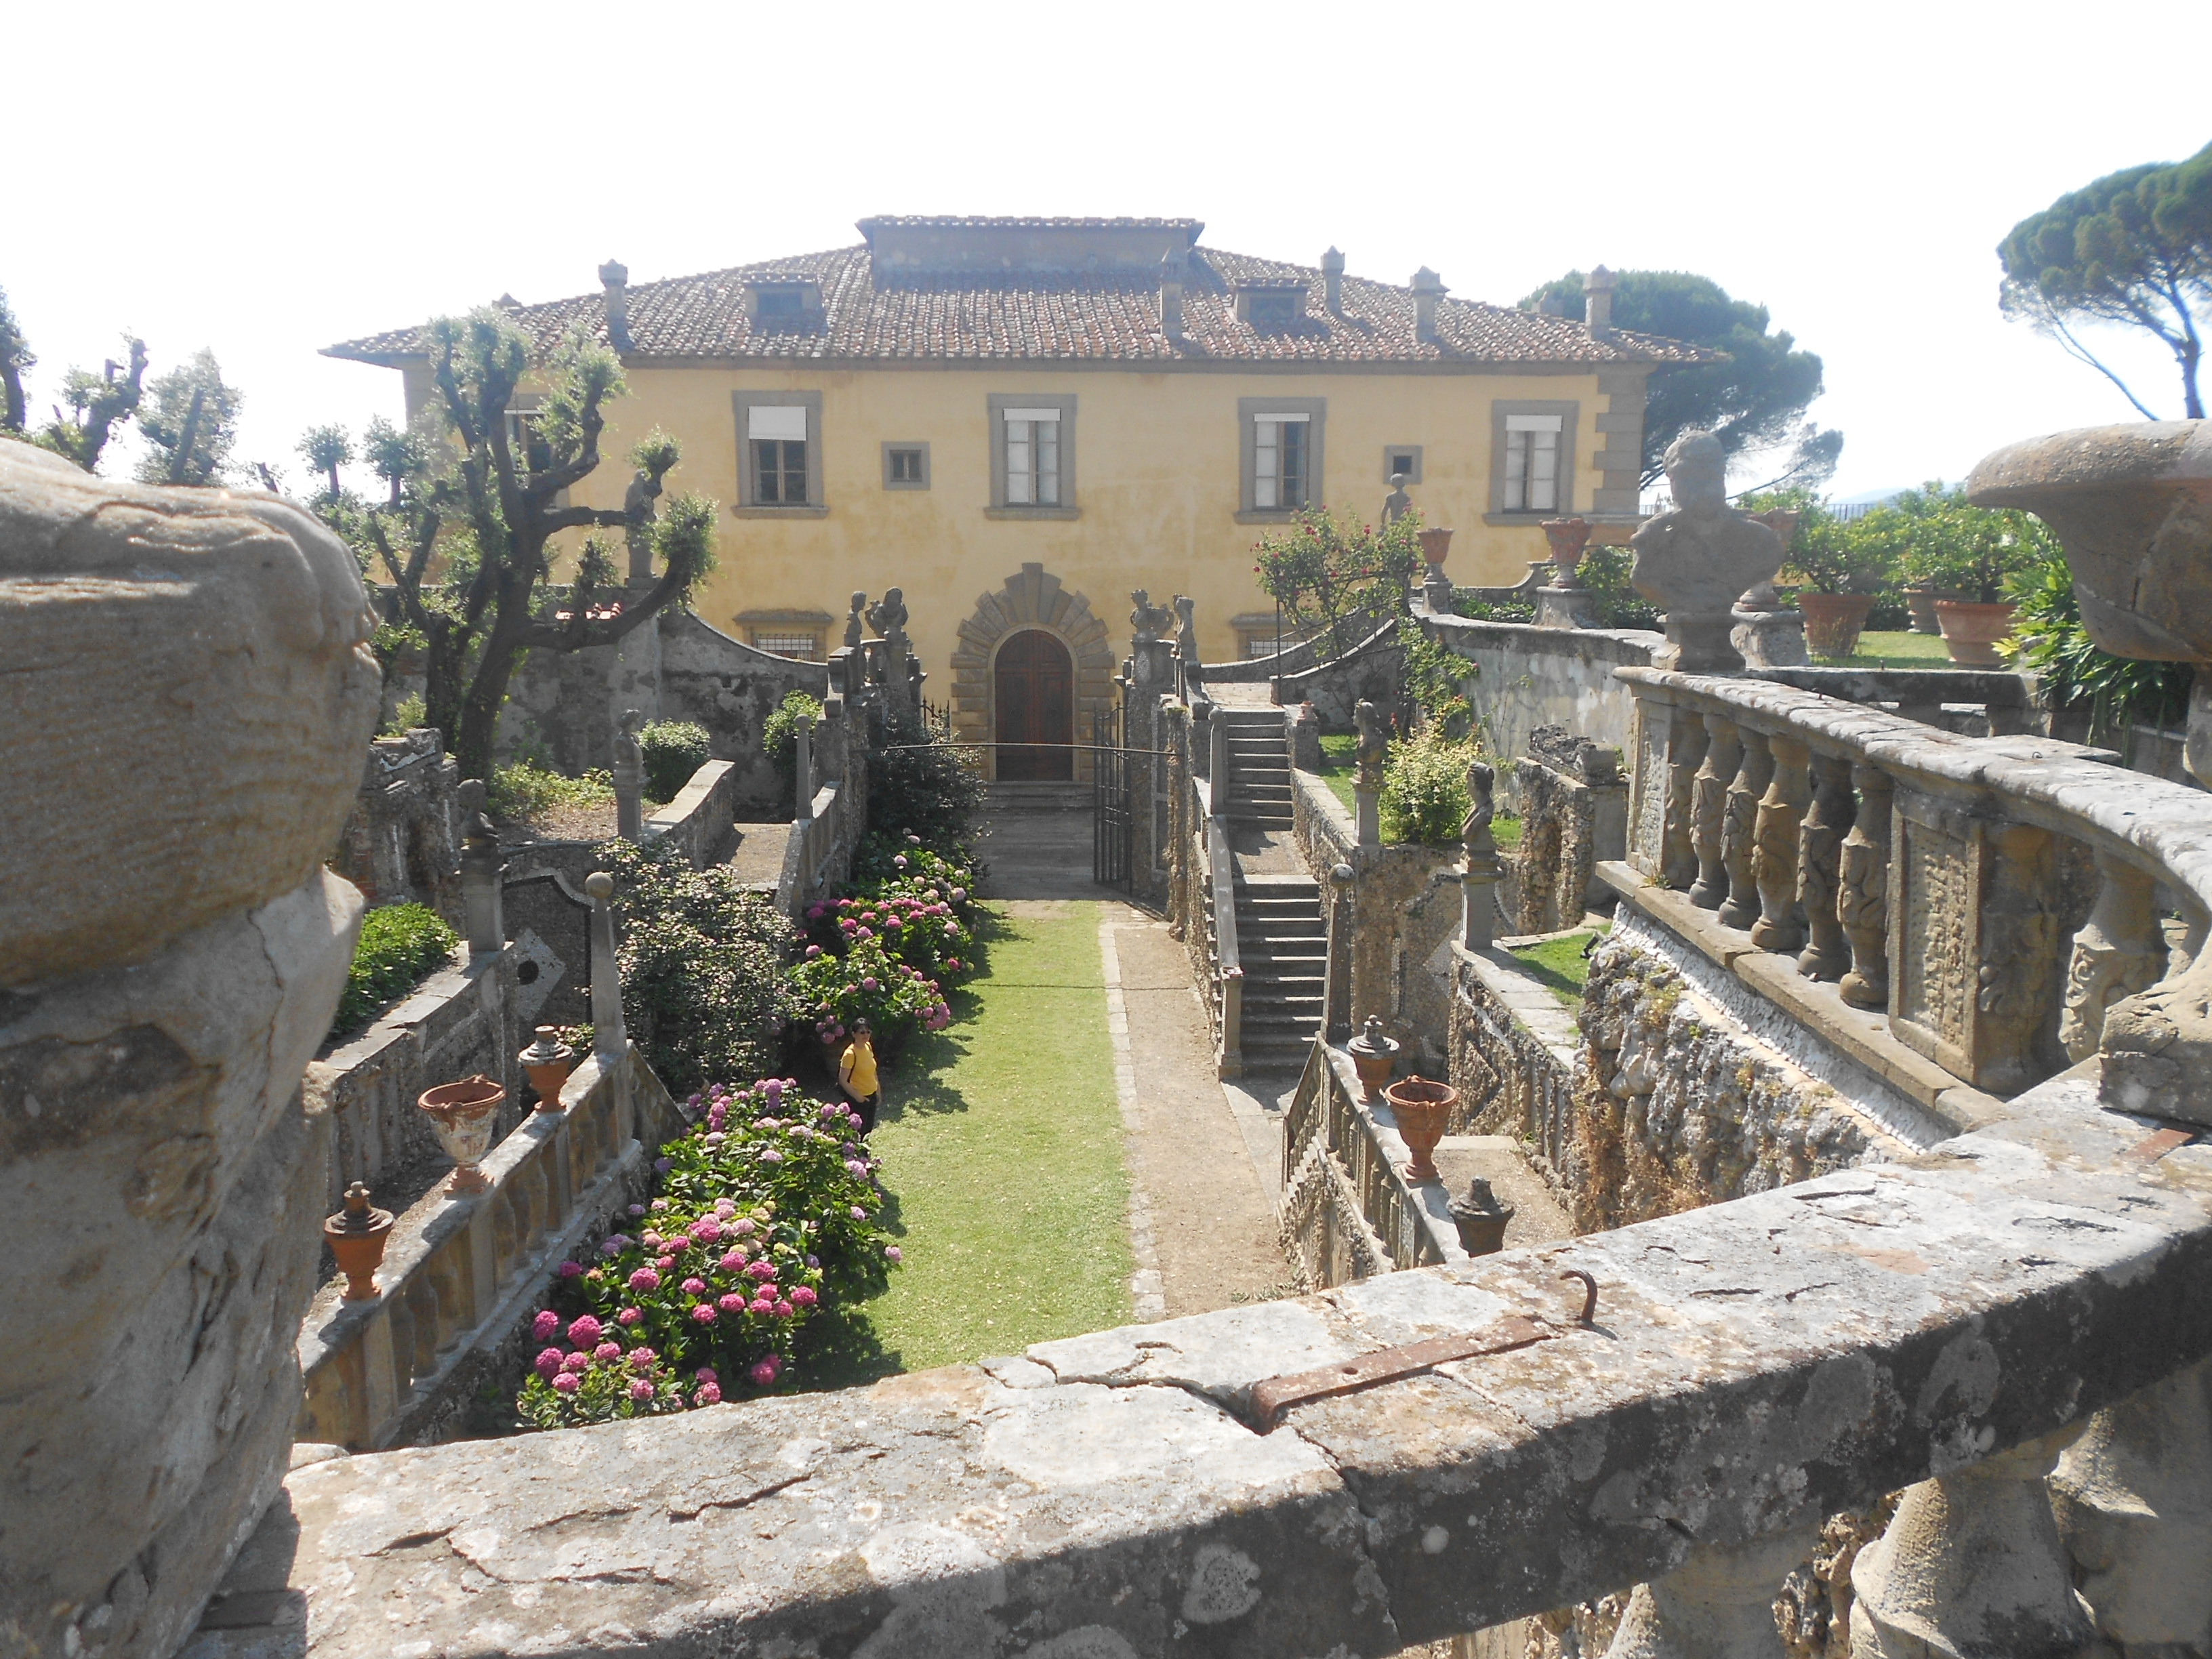 Villa Gamberaia e Settignano